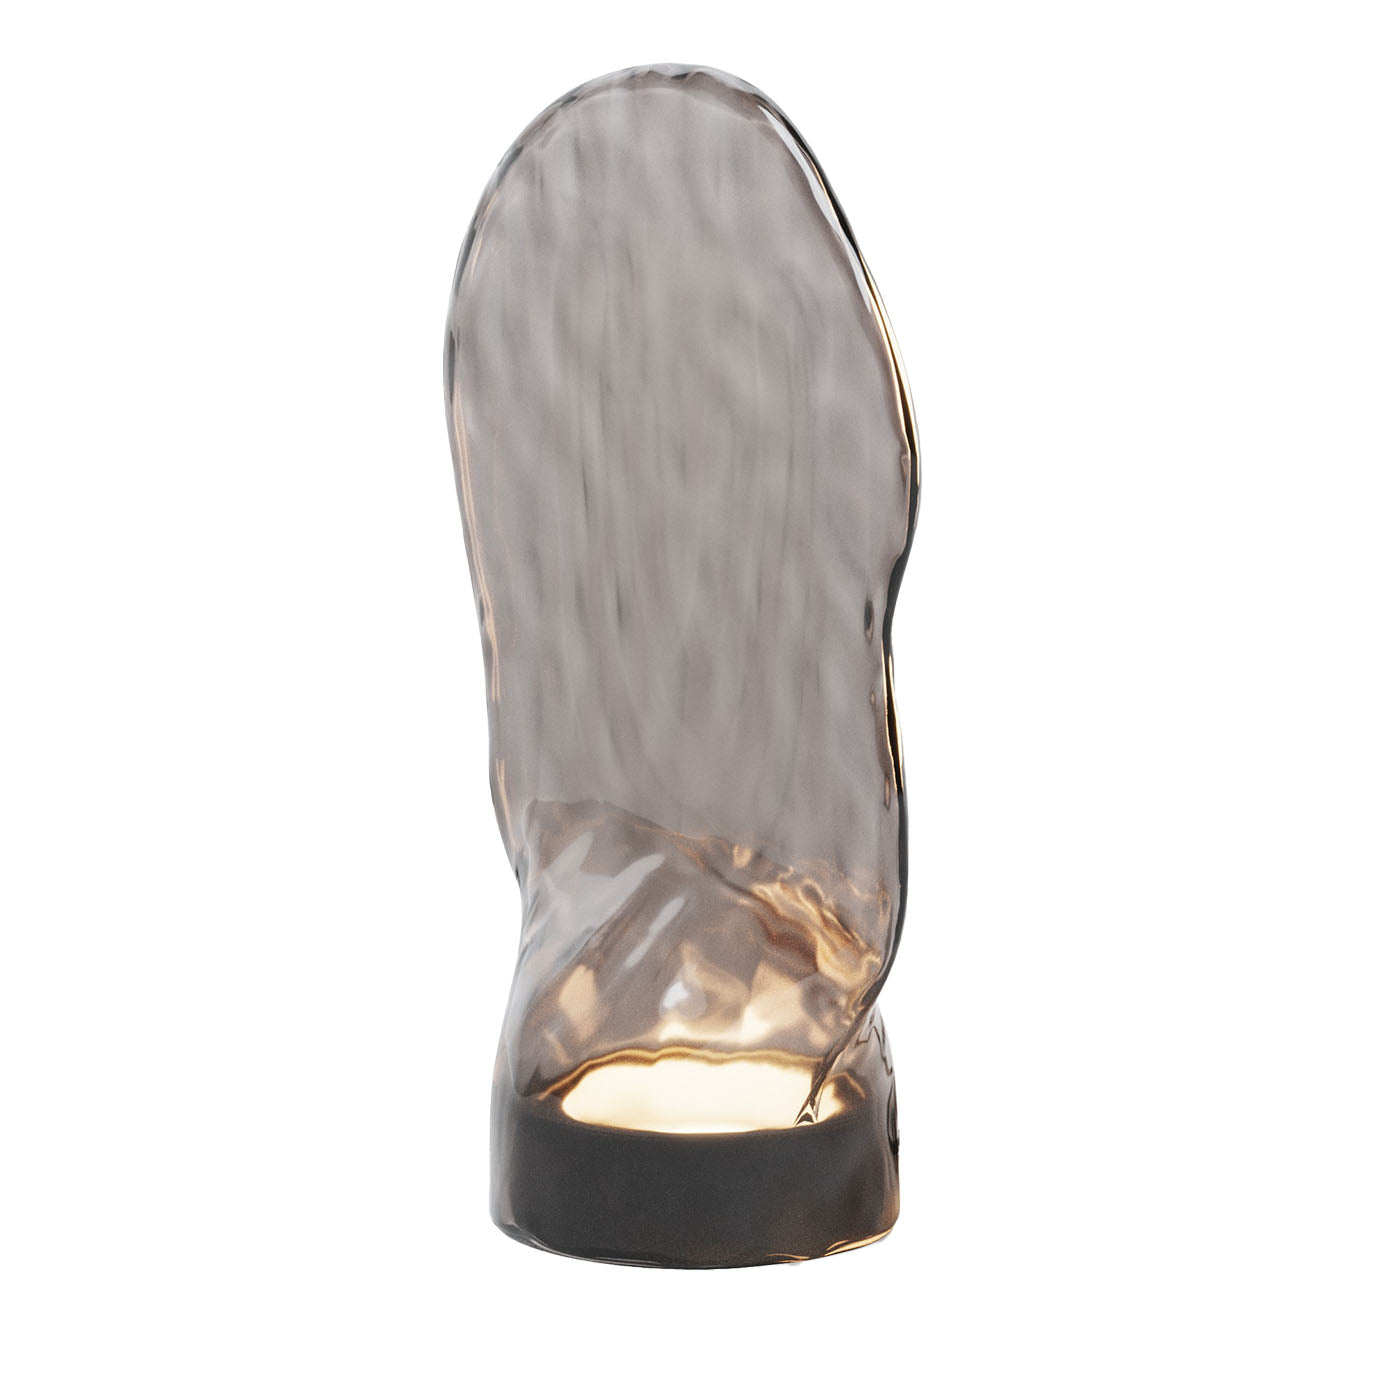 Lampara Räucherglas Tischlampe - Hauptansicht